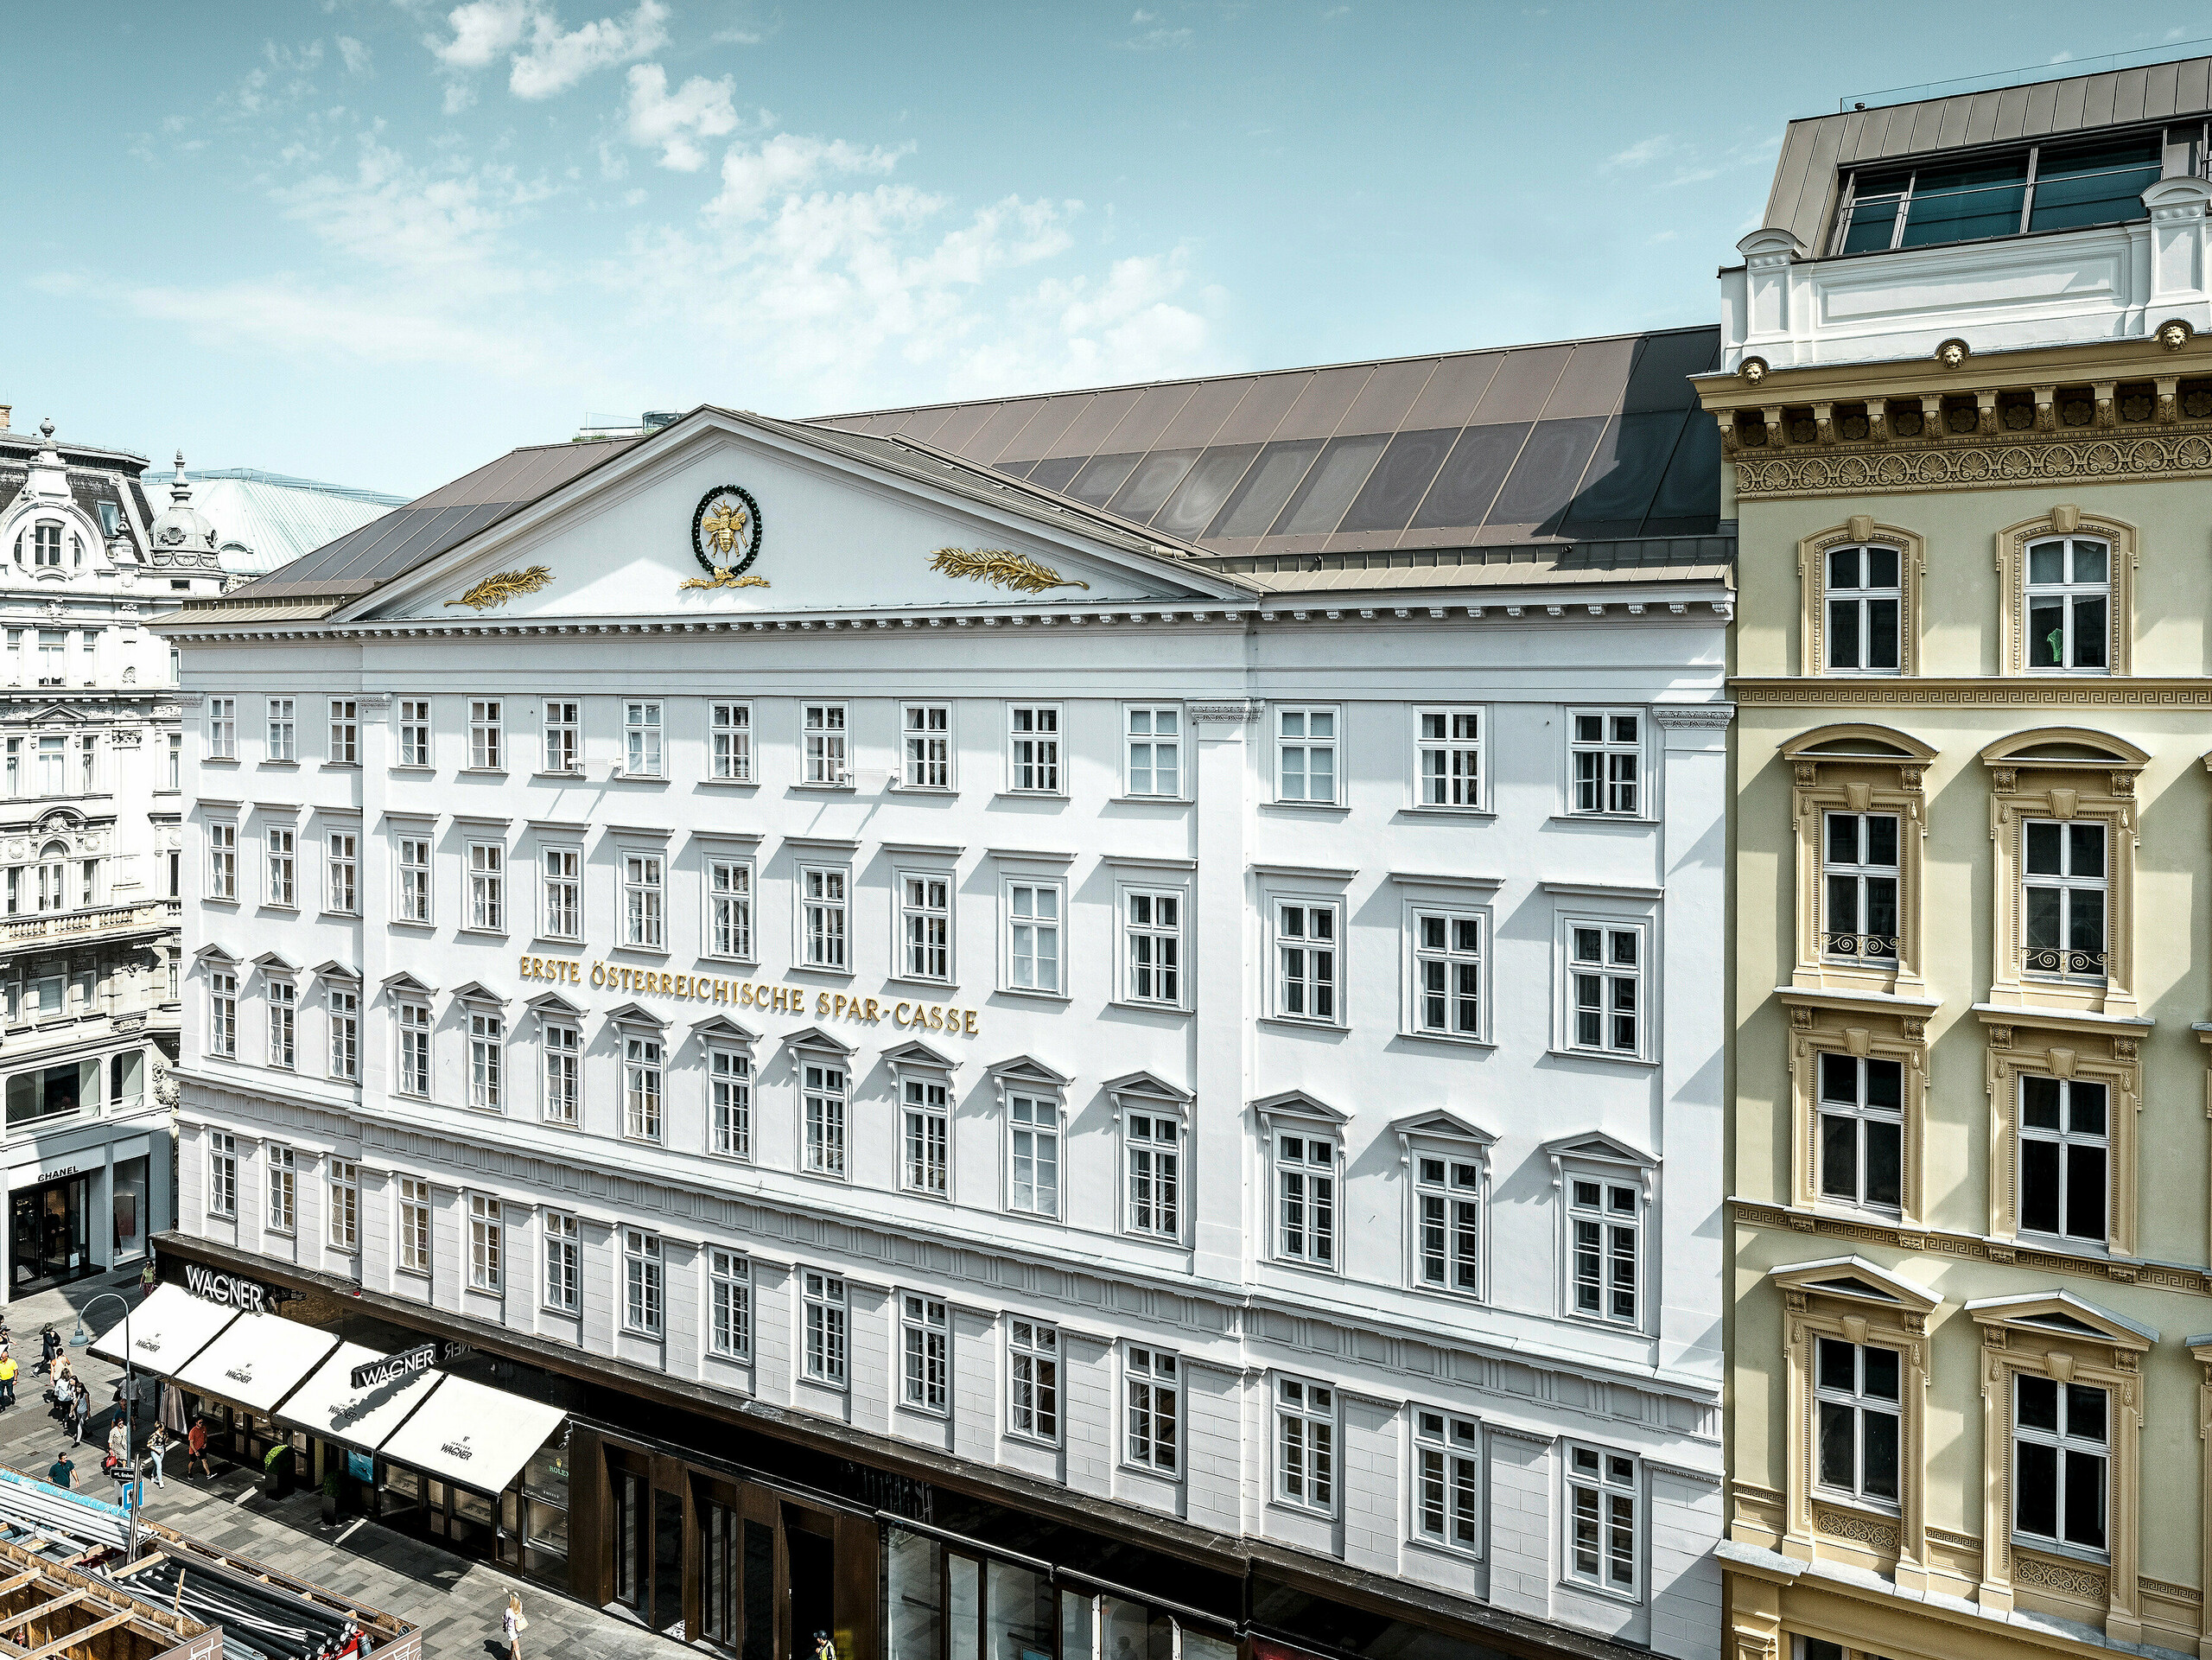 Seitliche Frontansicht des Hotels mit der historischen Fassade und dem bronzenen Aluminiumdach.